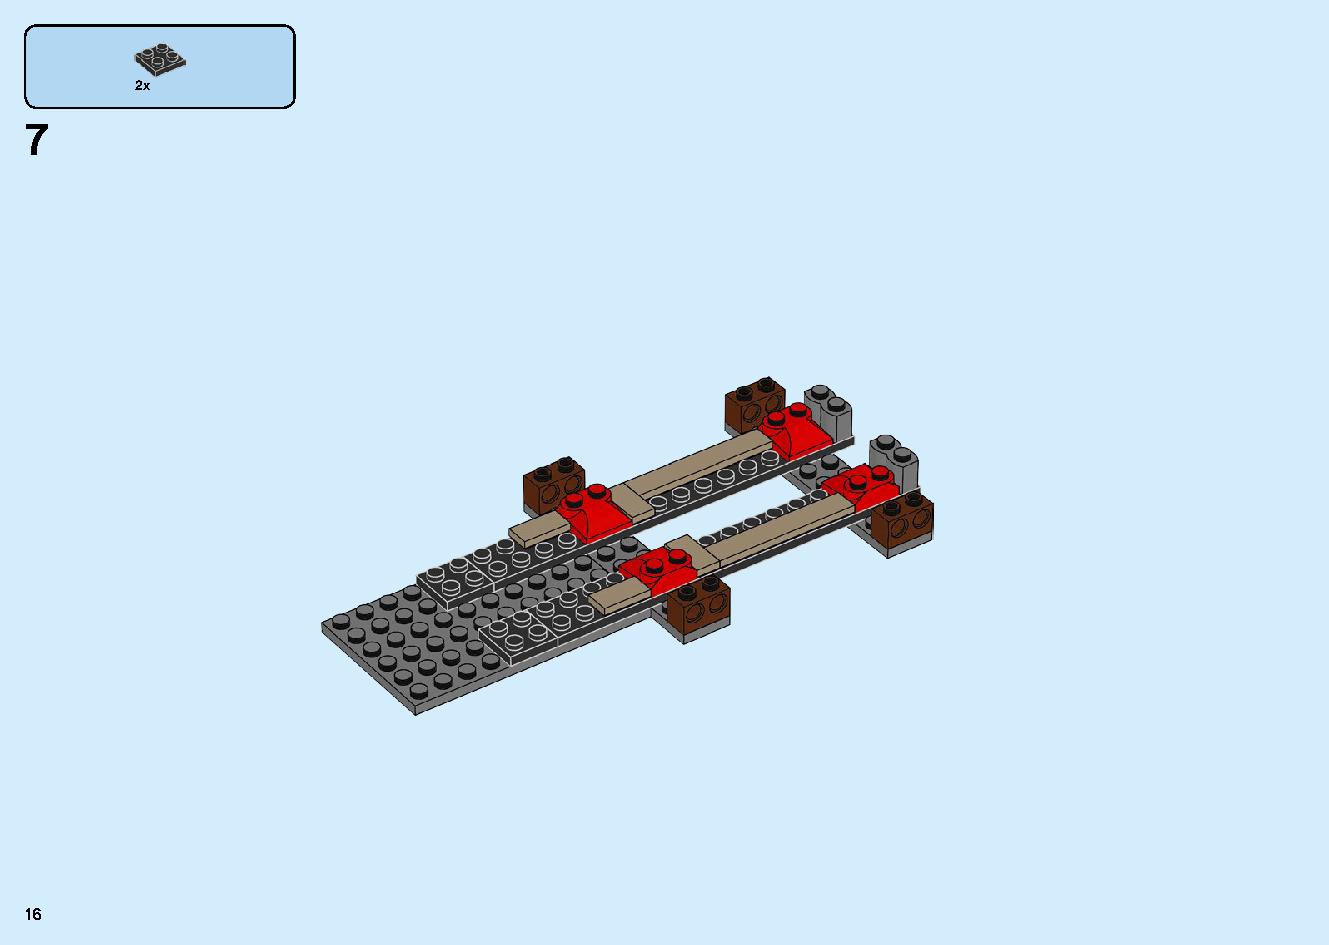 陸上戦艦バウンティ号 70677 レゴの商品情報 レゴの説明書・組立方法 16 page